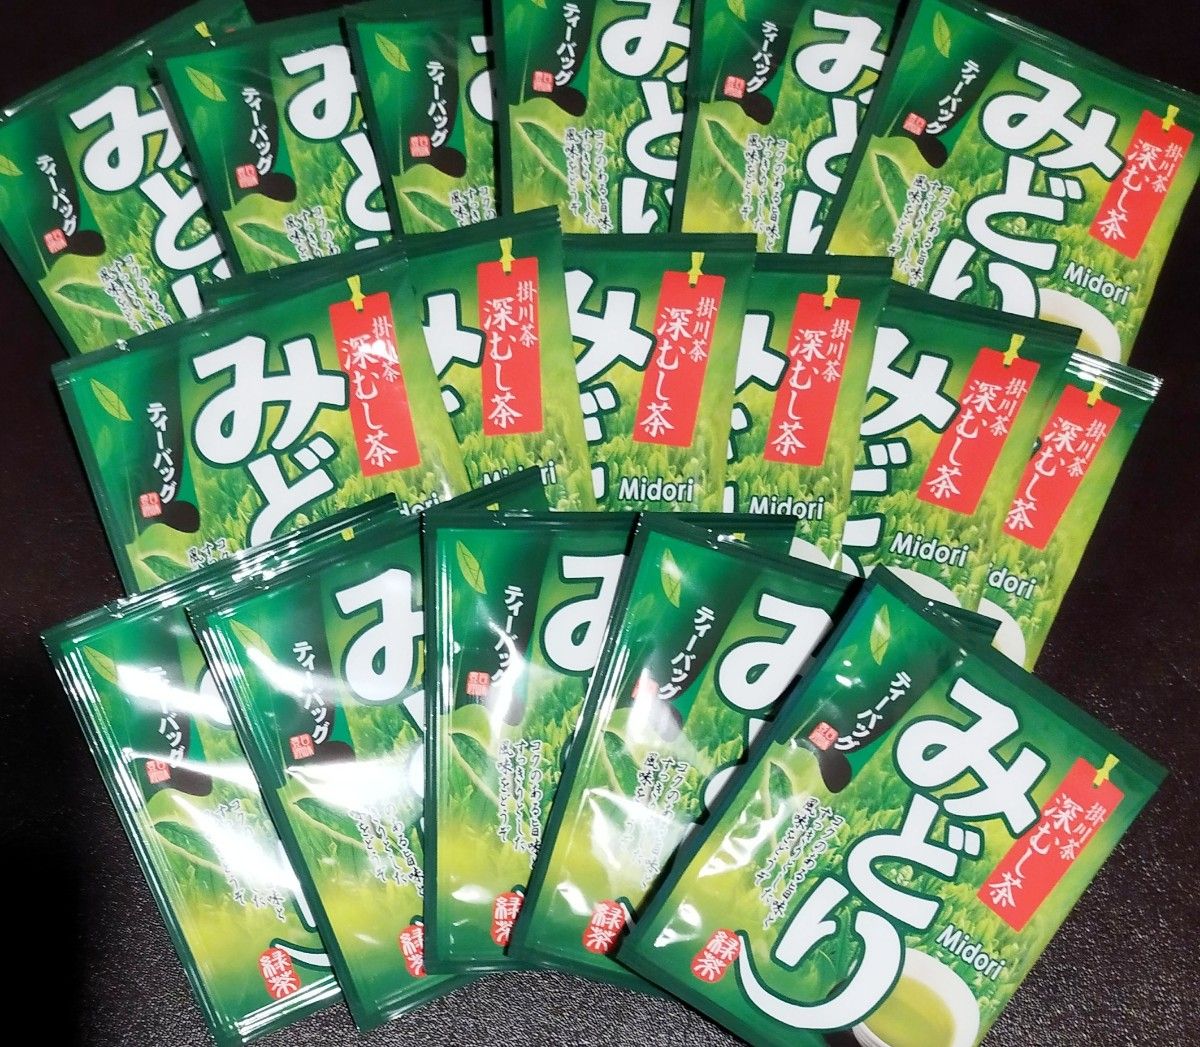 17個 掛川茶 深むし茶 ティーバッグ 静岡県産 煎茶 緑茶 大塚製茶 個包装